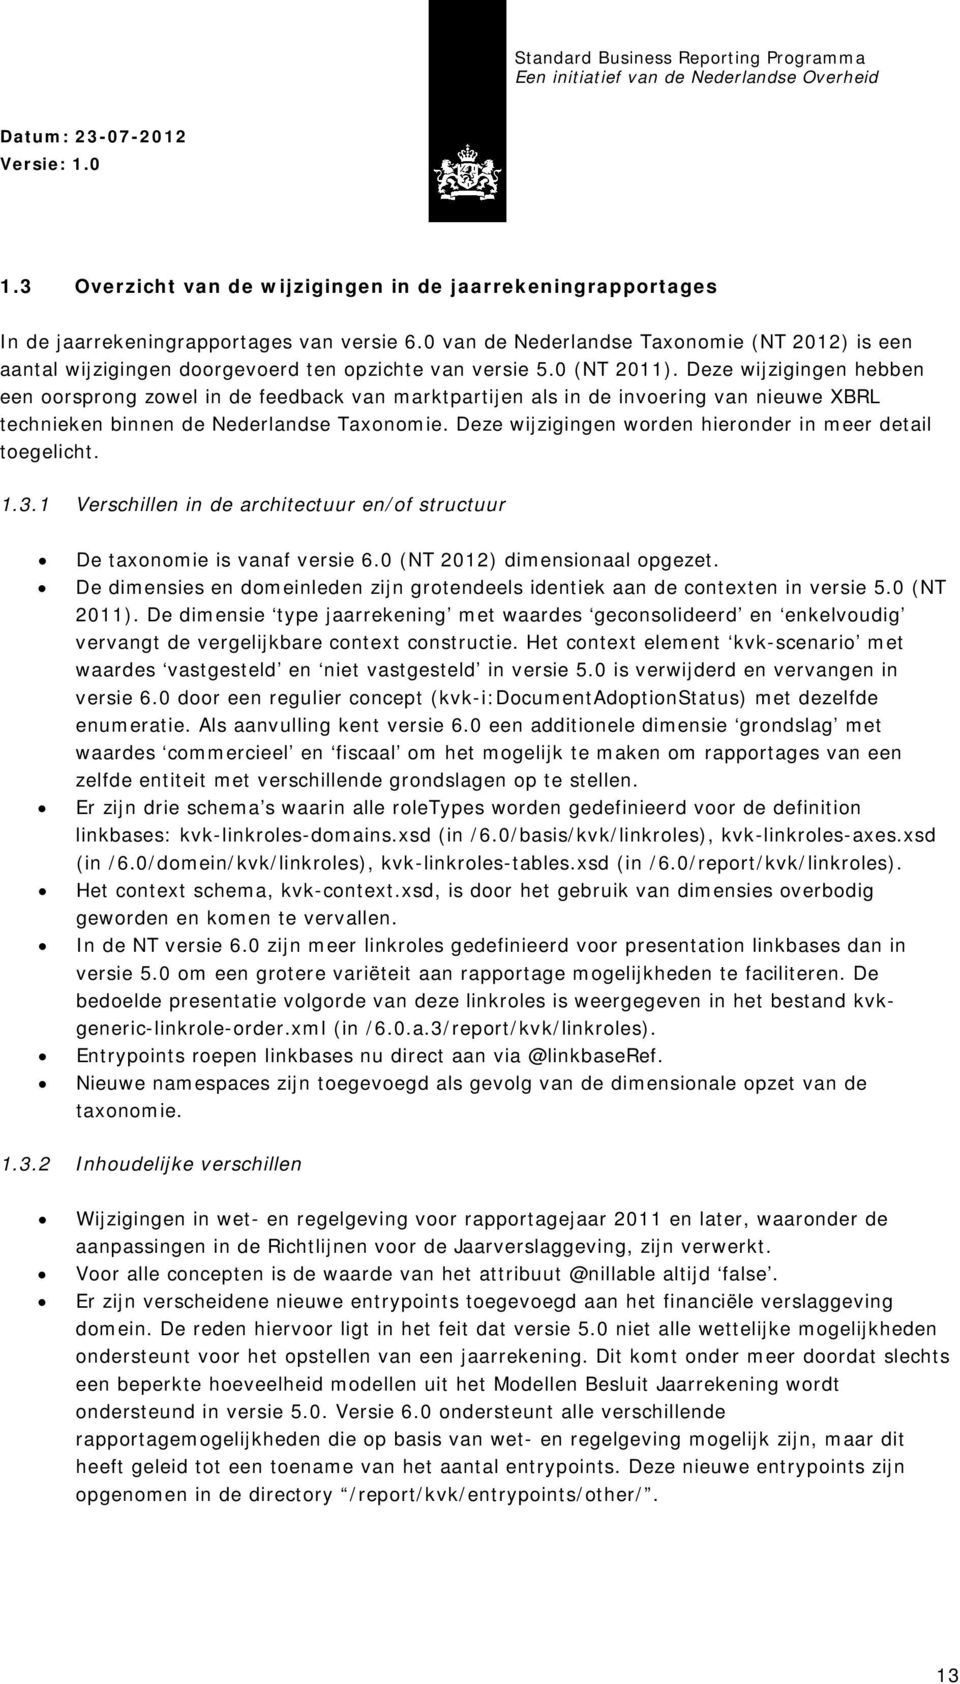 Deze wijzigingen hebben een oorsprong zowel in de feedback van marktpartijen als in de invoering van nieuwe XBRL technieken binnen de Nederlandse Taxonomie.